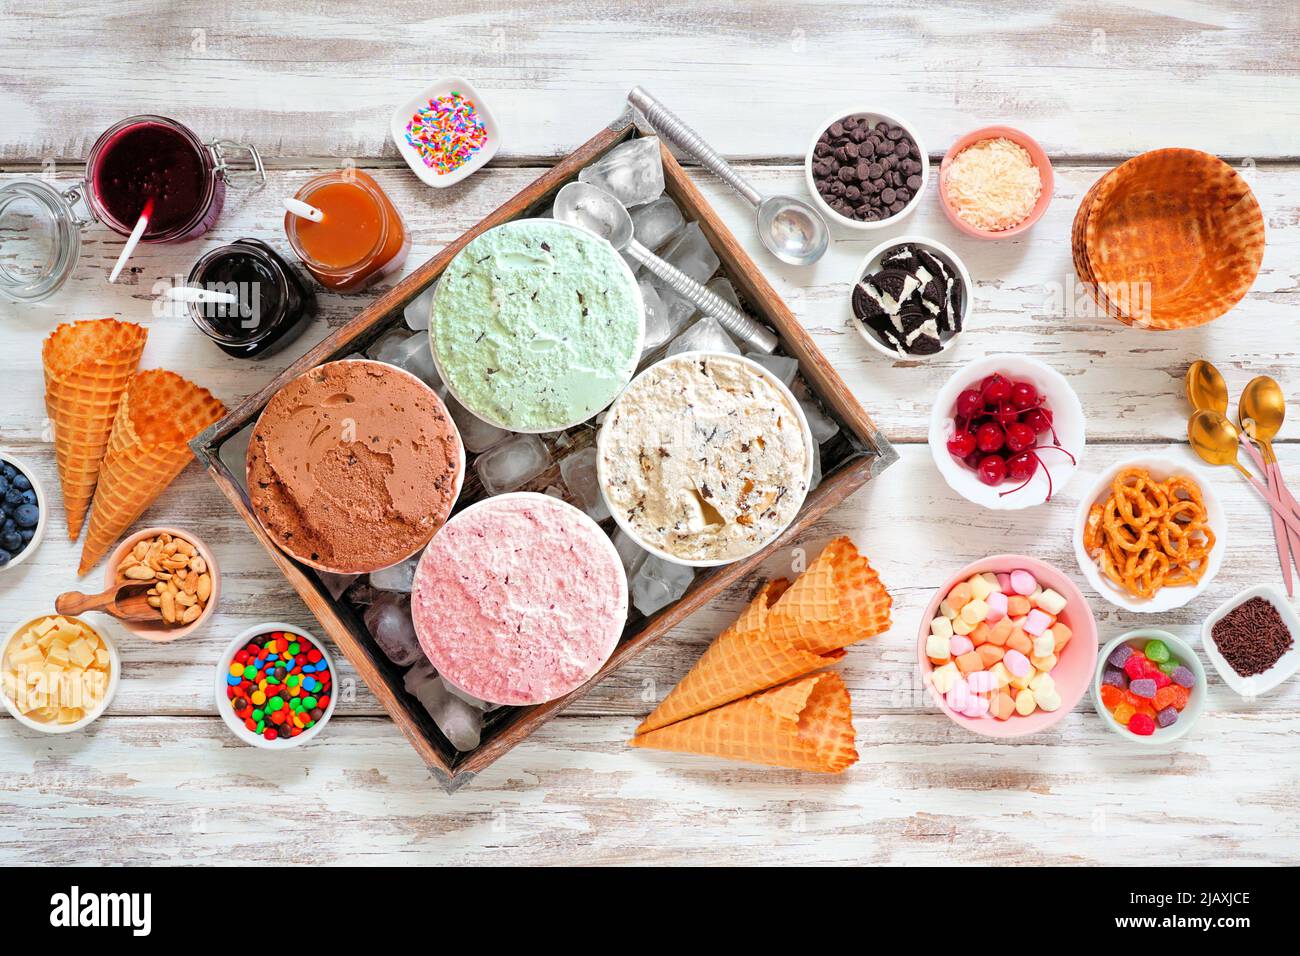 Gelateria estiva con una selezione di sapori di gelato e condimenti da dessert. Vista dall'alto della scena da tavolo su un rustico sfondo di legno bianco. Foto Stock